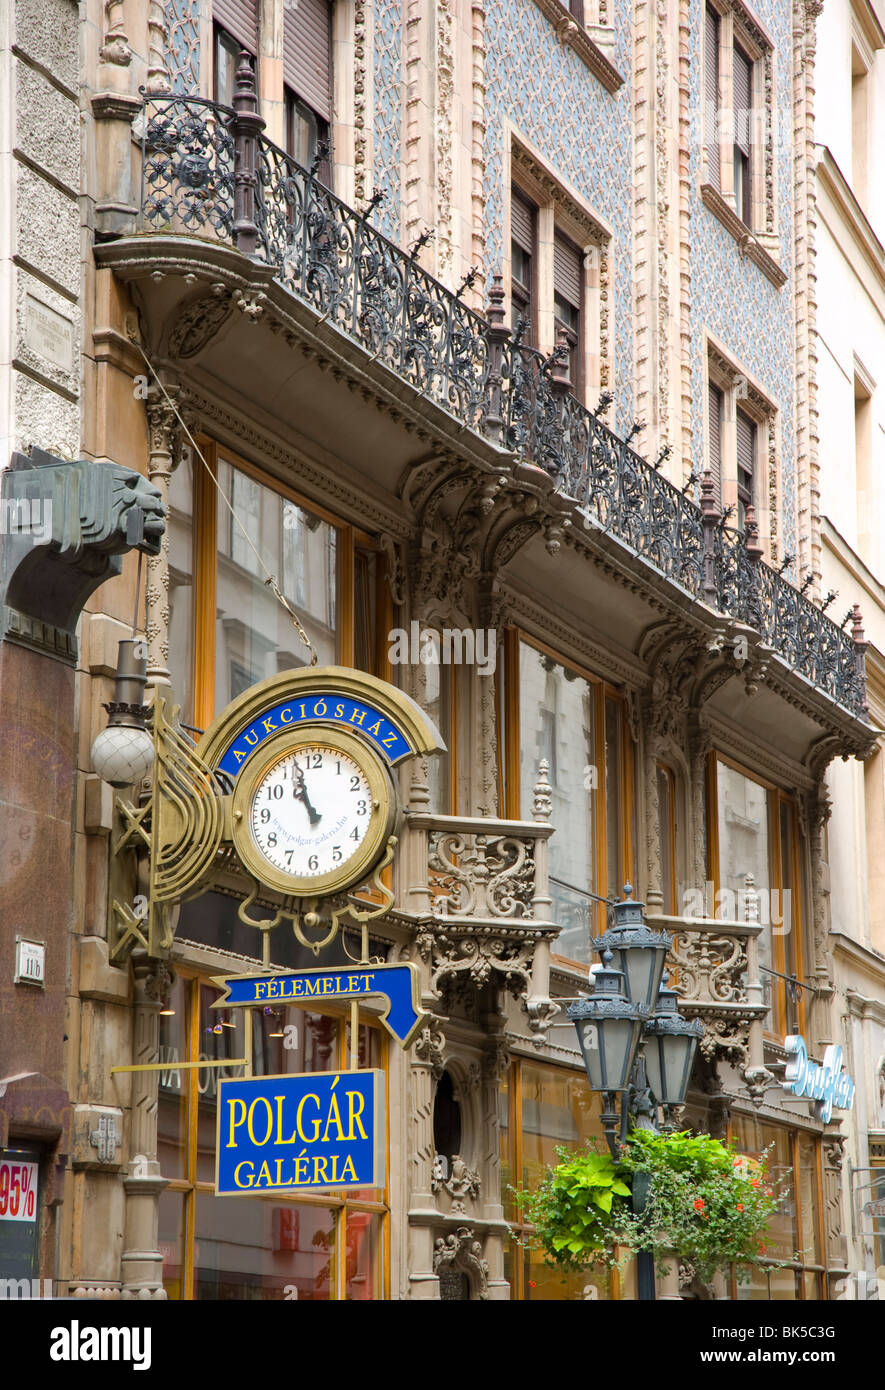 La façade d'un bâtiment dans la rue Vaci, une zone piétonne et commerçante dans le côté Pest de Budapest, Hongrie, Europe Banque D'Images